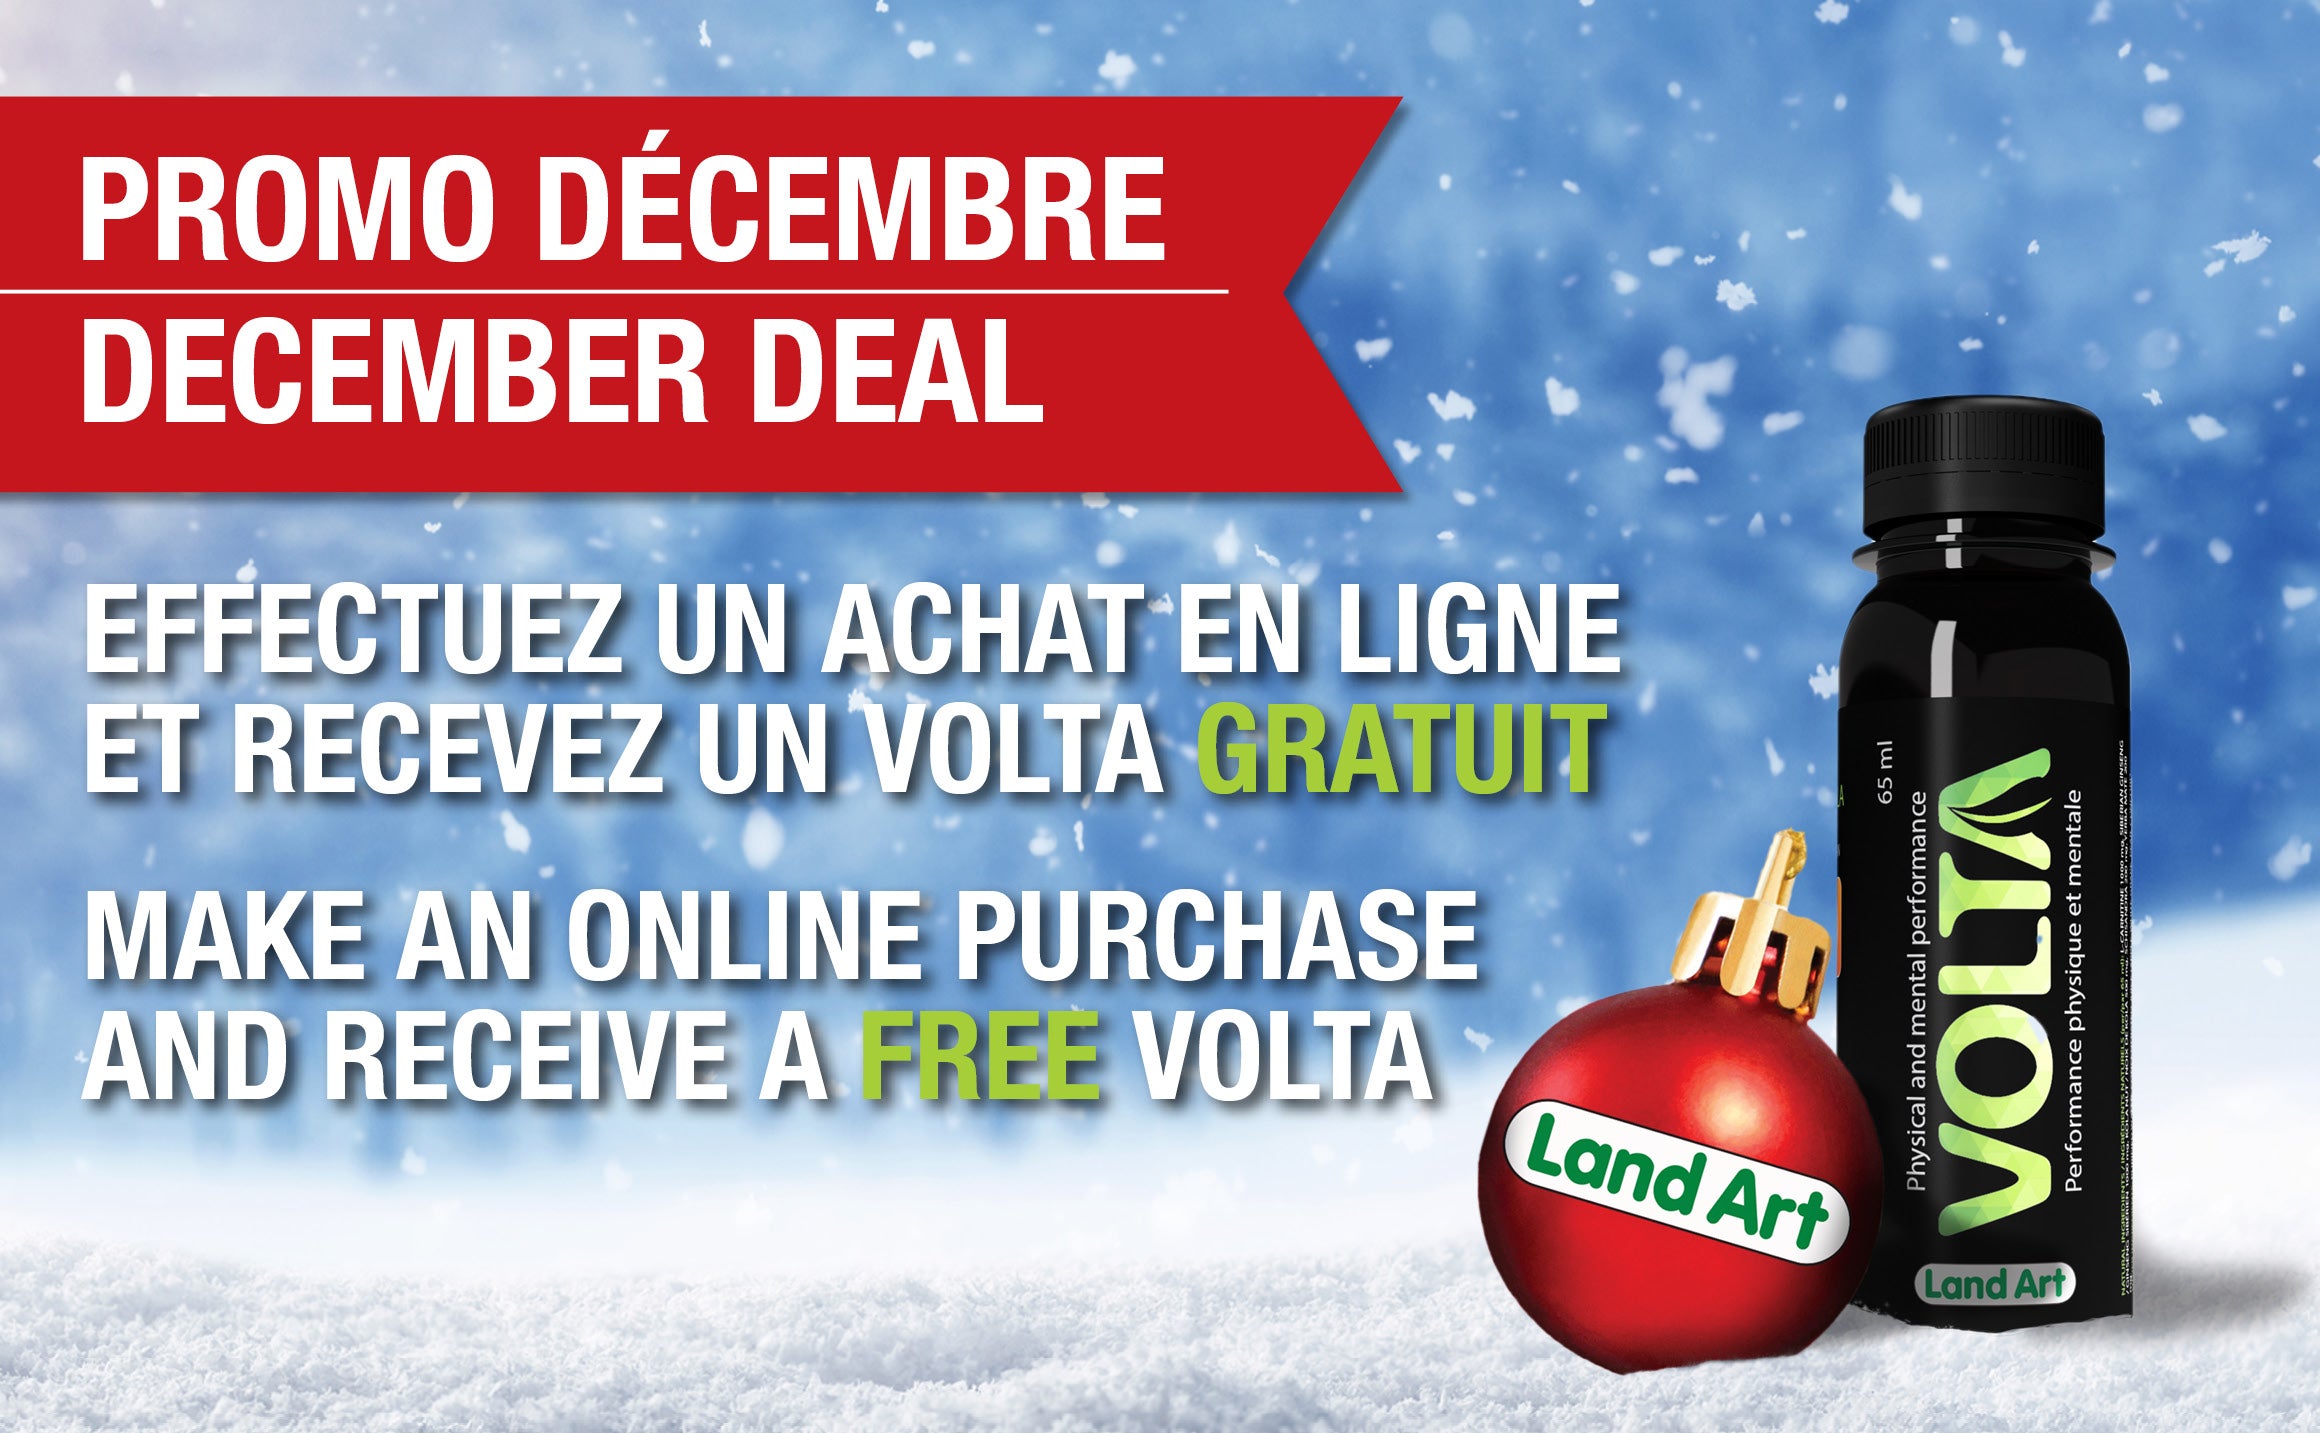 Promo décembre, effectuez un achat en ligne et recevez un volta gratuit. December deal, make an online purchase and receive a free volta.